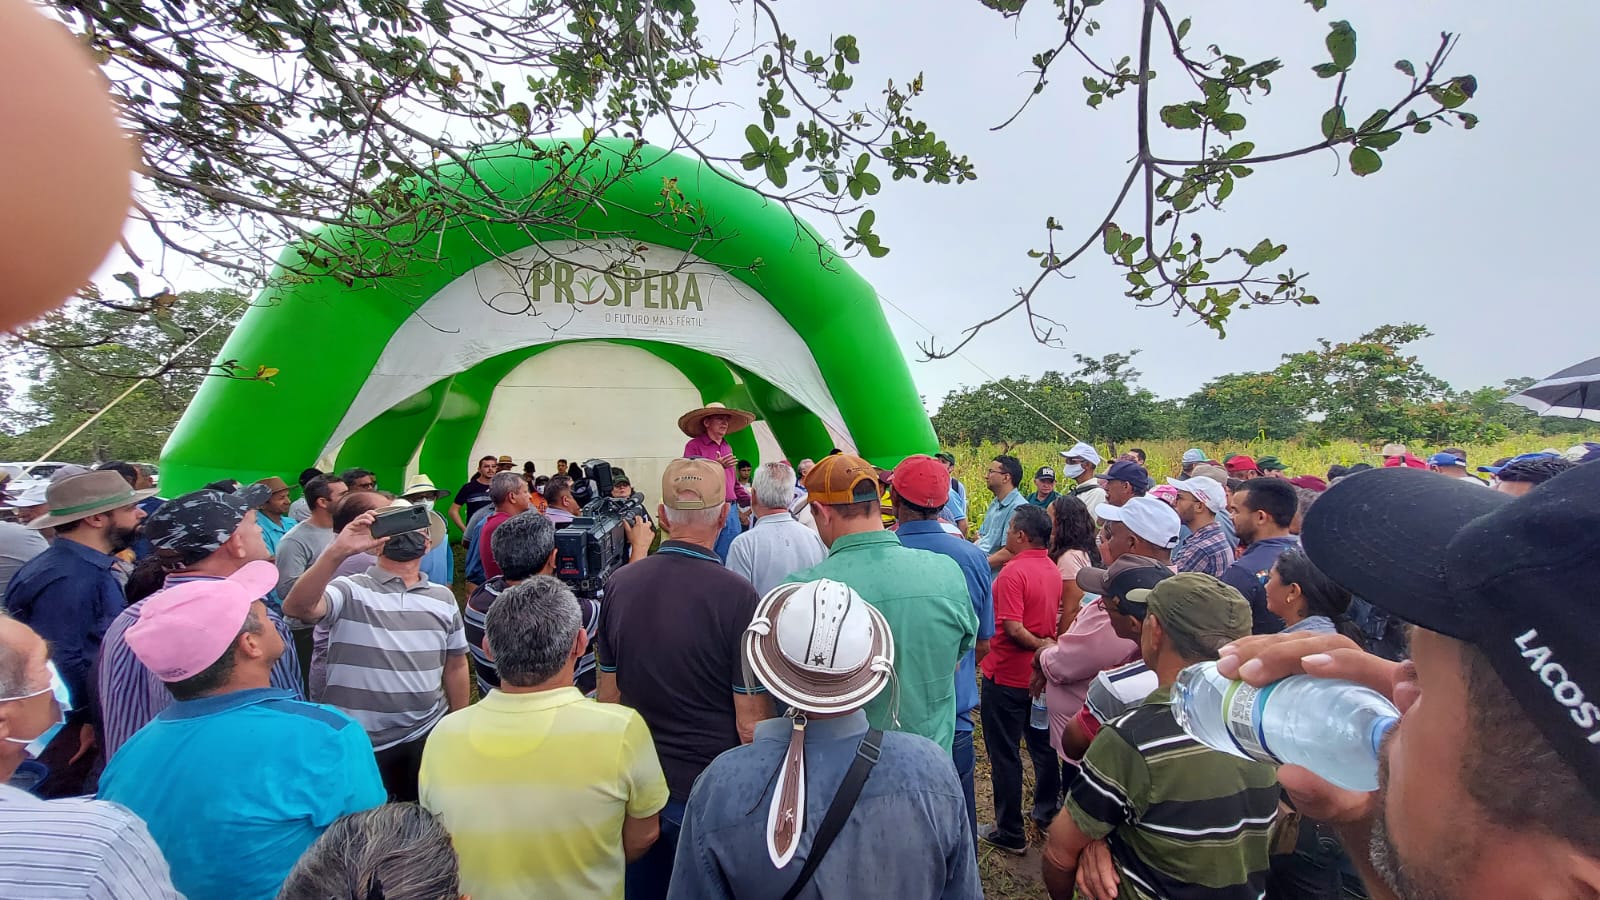 Ematerce e Prospera finalizam dias de campo com grande público no município de Ocara (CE)